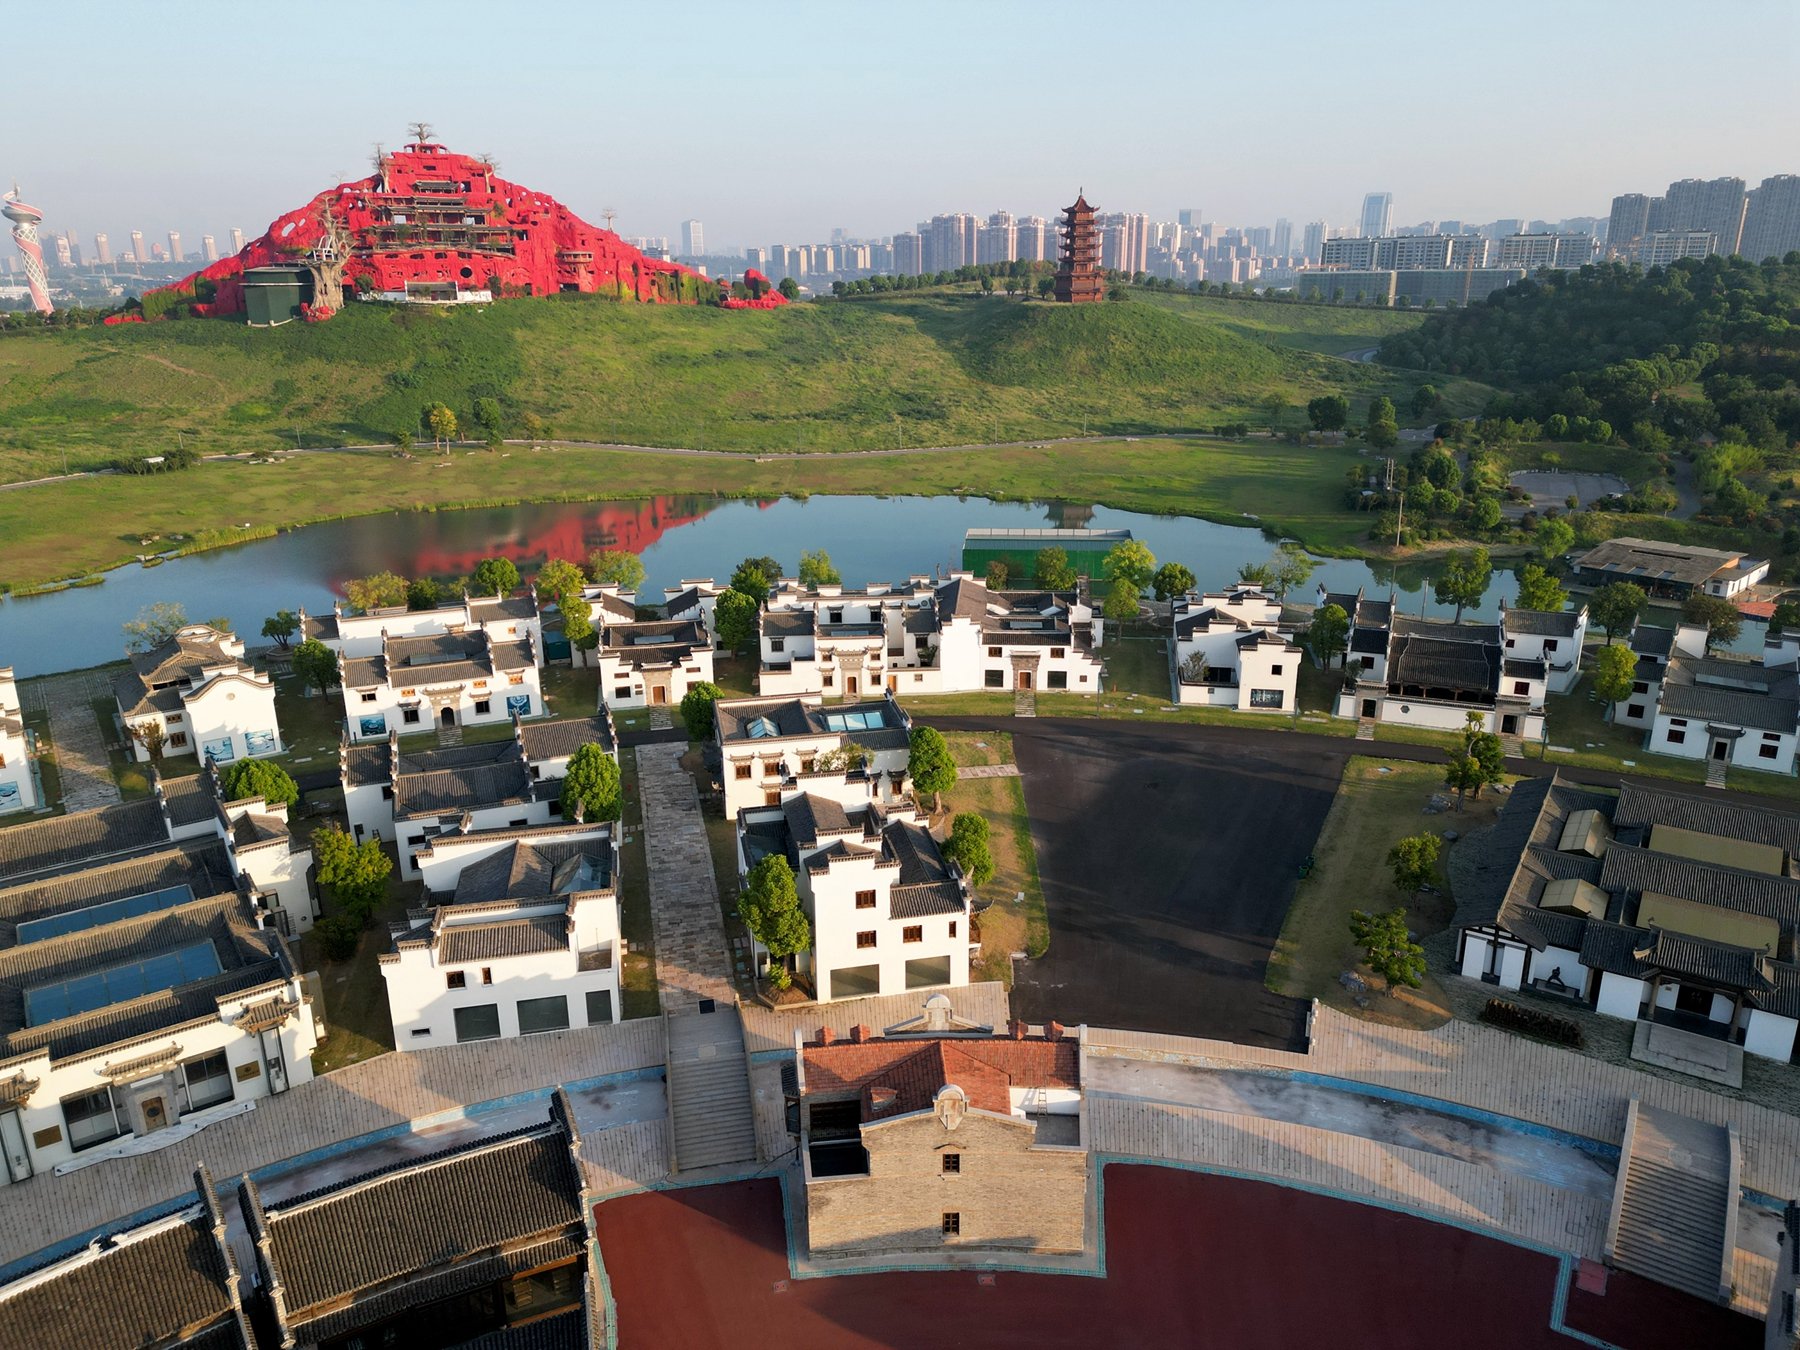 蚌埠古民居博览园图片